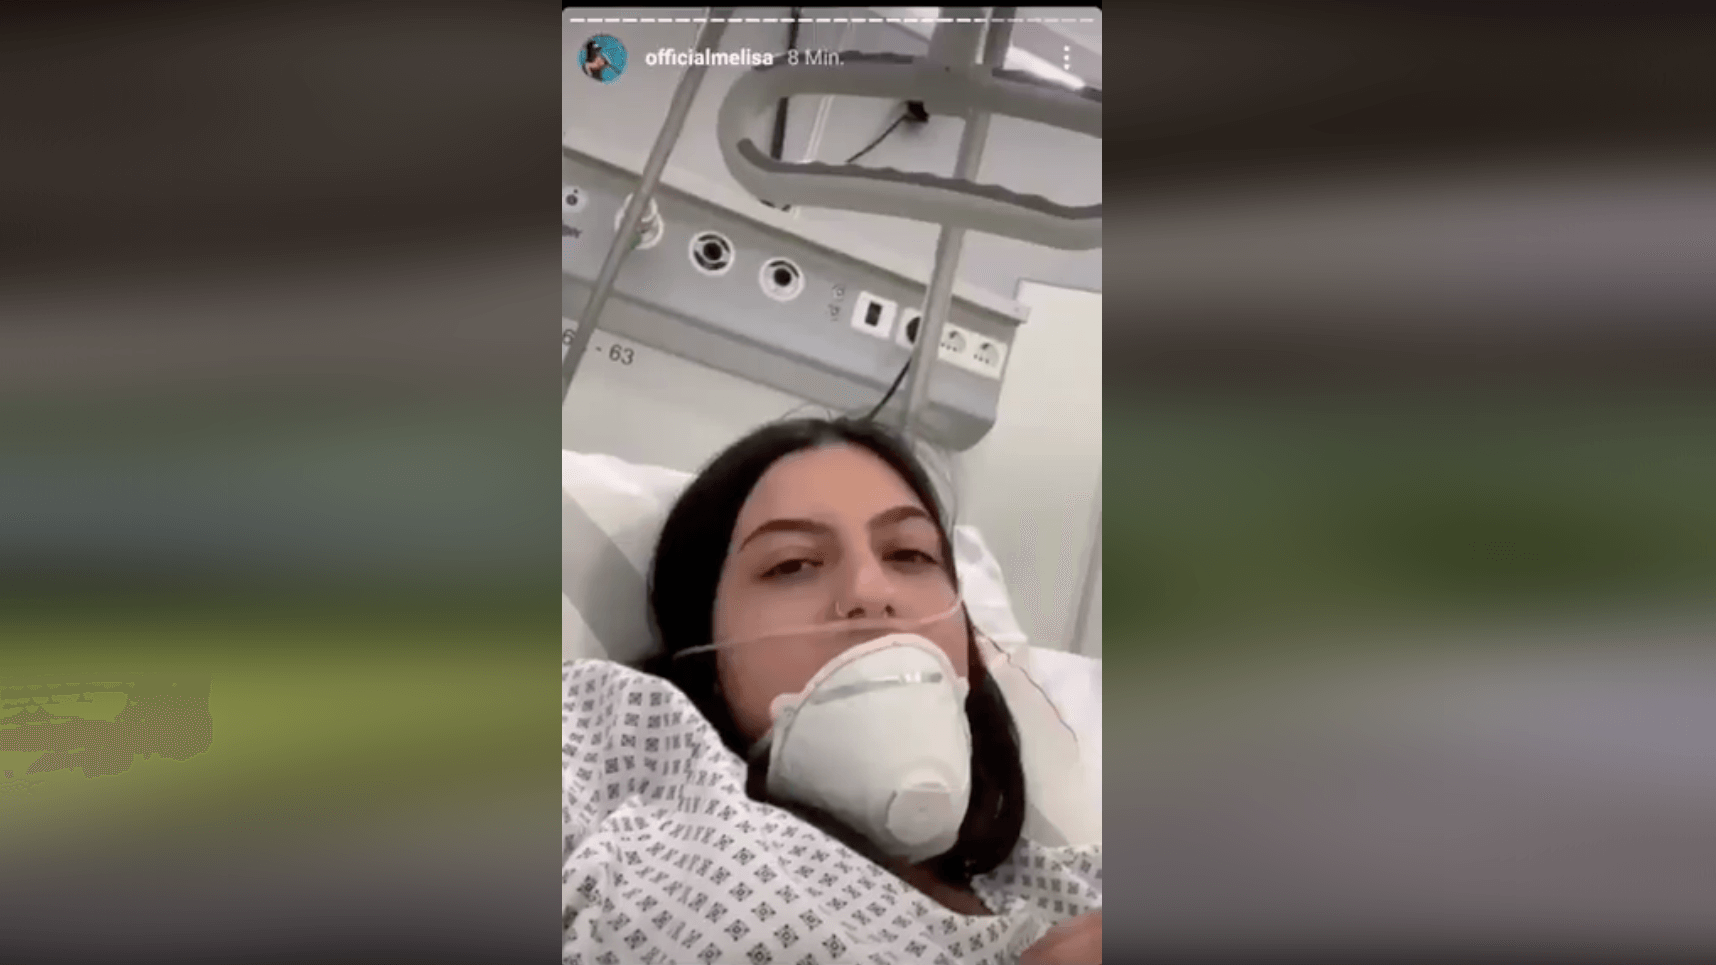 Dieses Instagram-Video wurde in Sozialen Netzwerken mit der Behauptung verbreitet, es zeige, wie mit gestellten Aufnahmen Panik vor Corona geschürt werden soll. Das ist falsch, es handelte sich lediglich um eine medizinische Übung eines Krankenhauses in Berlin. (Quelle: Facebook / Screenshot: CORRECTIV)